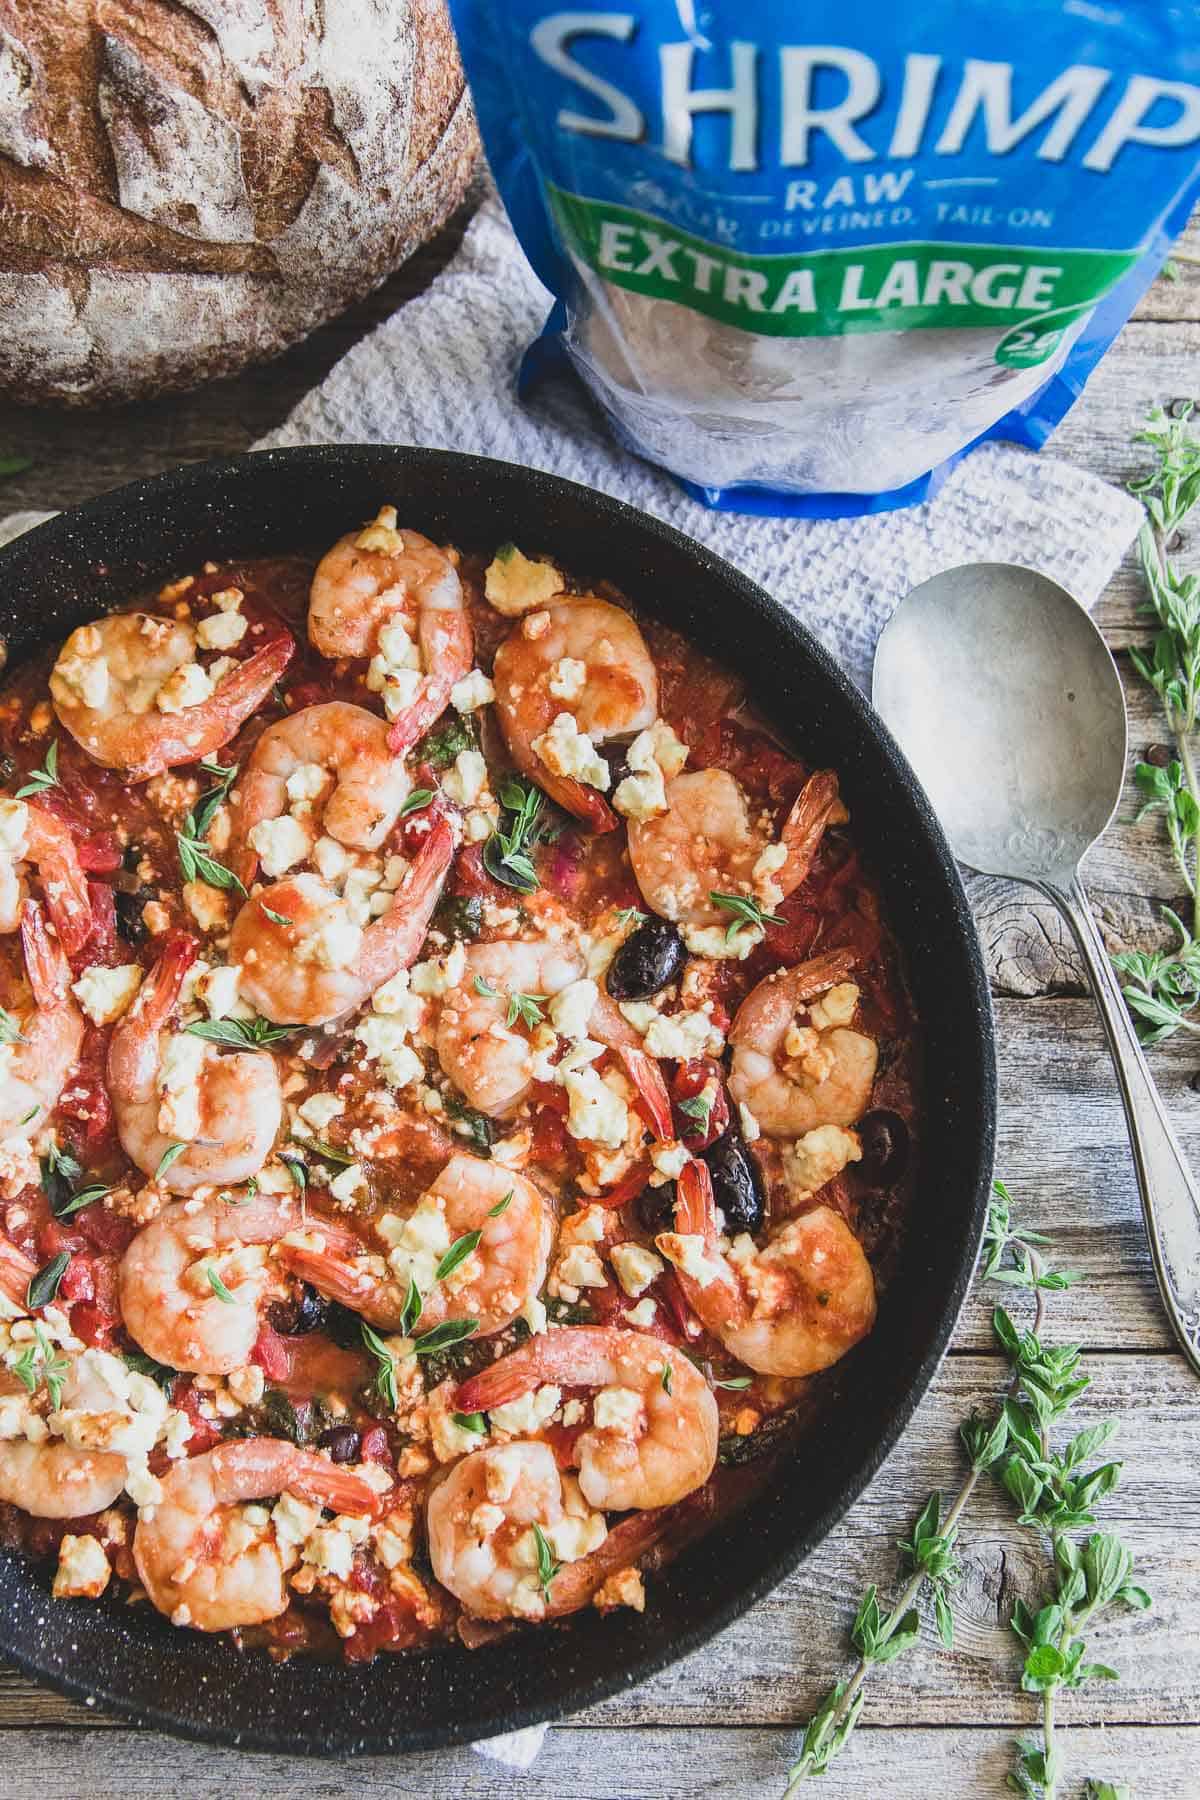 Frozen shrimp make this Greek shrimp skillet super easy for a tasty weeknight meal.